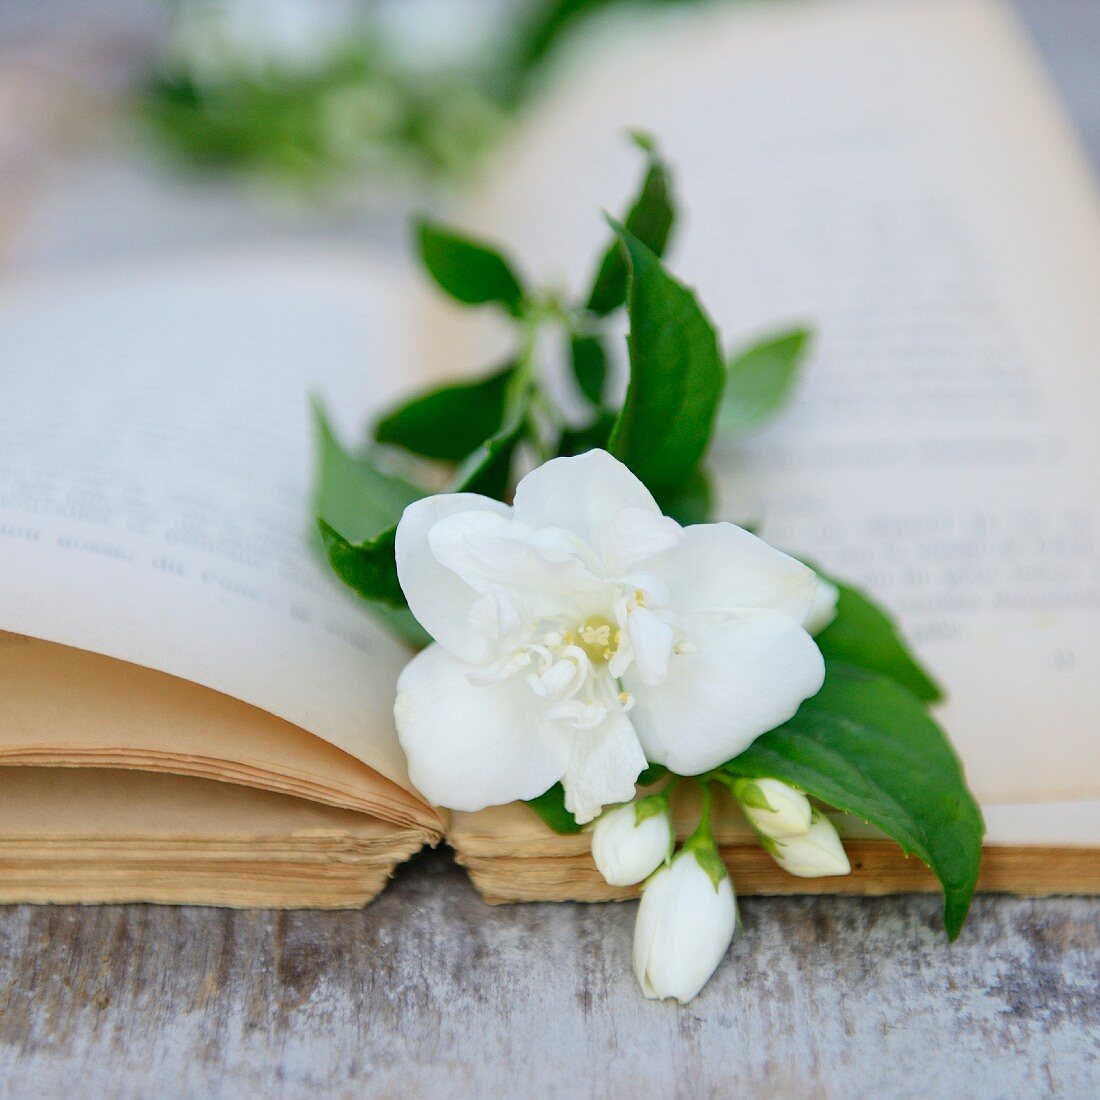 weiße Jasminblumen auf einem alten Buch